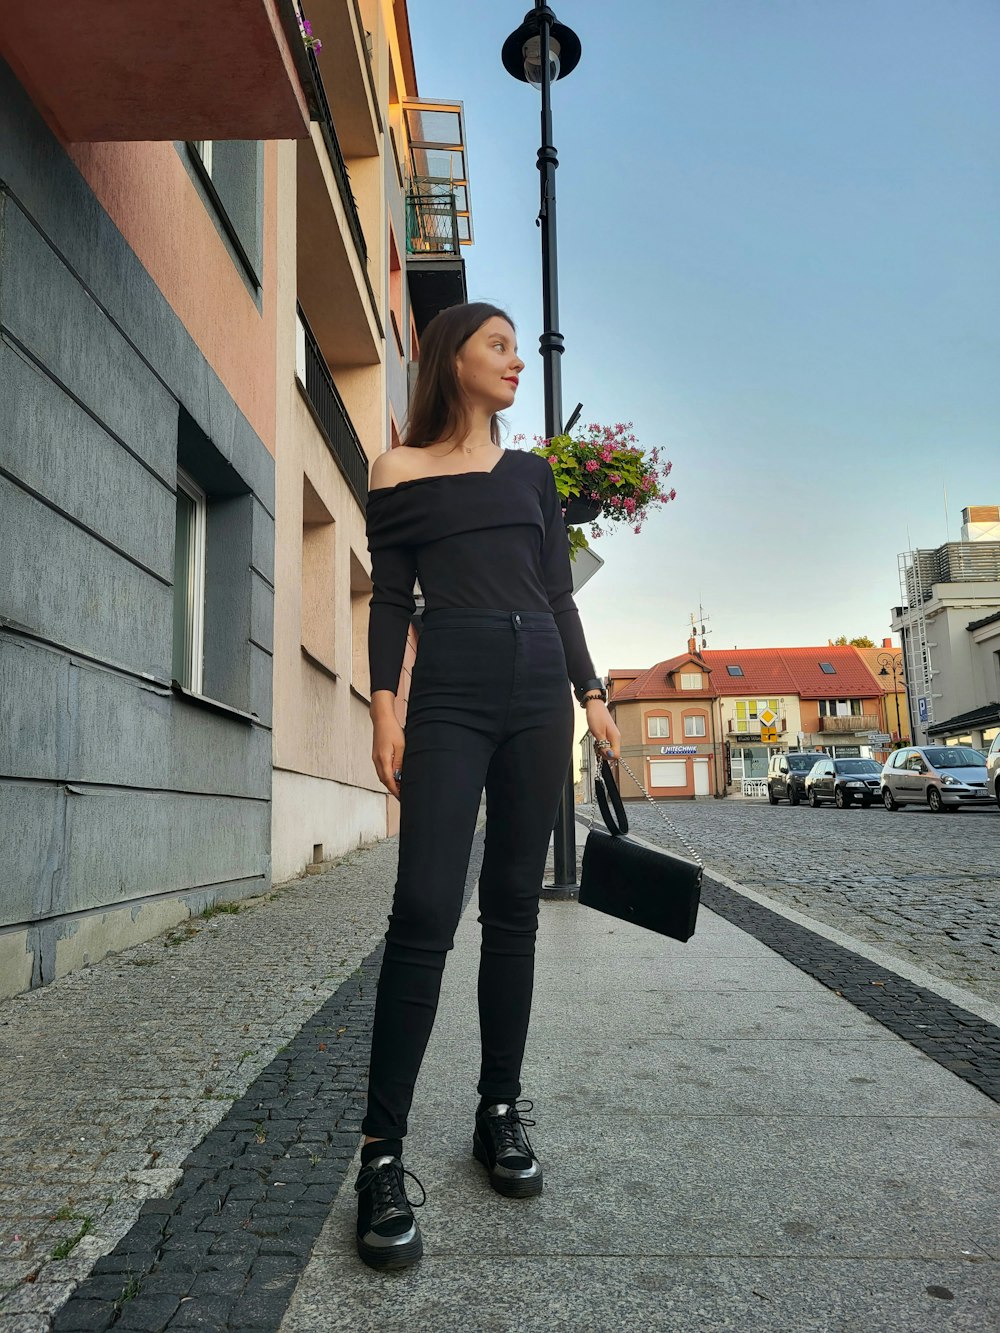 黒い服を着た女性が通りを歩いている